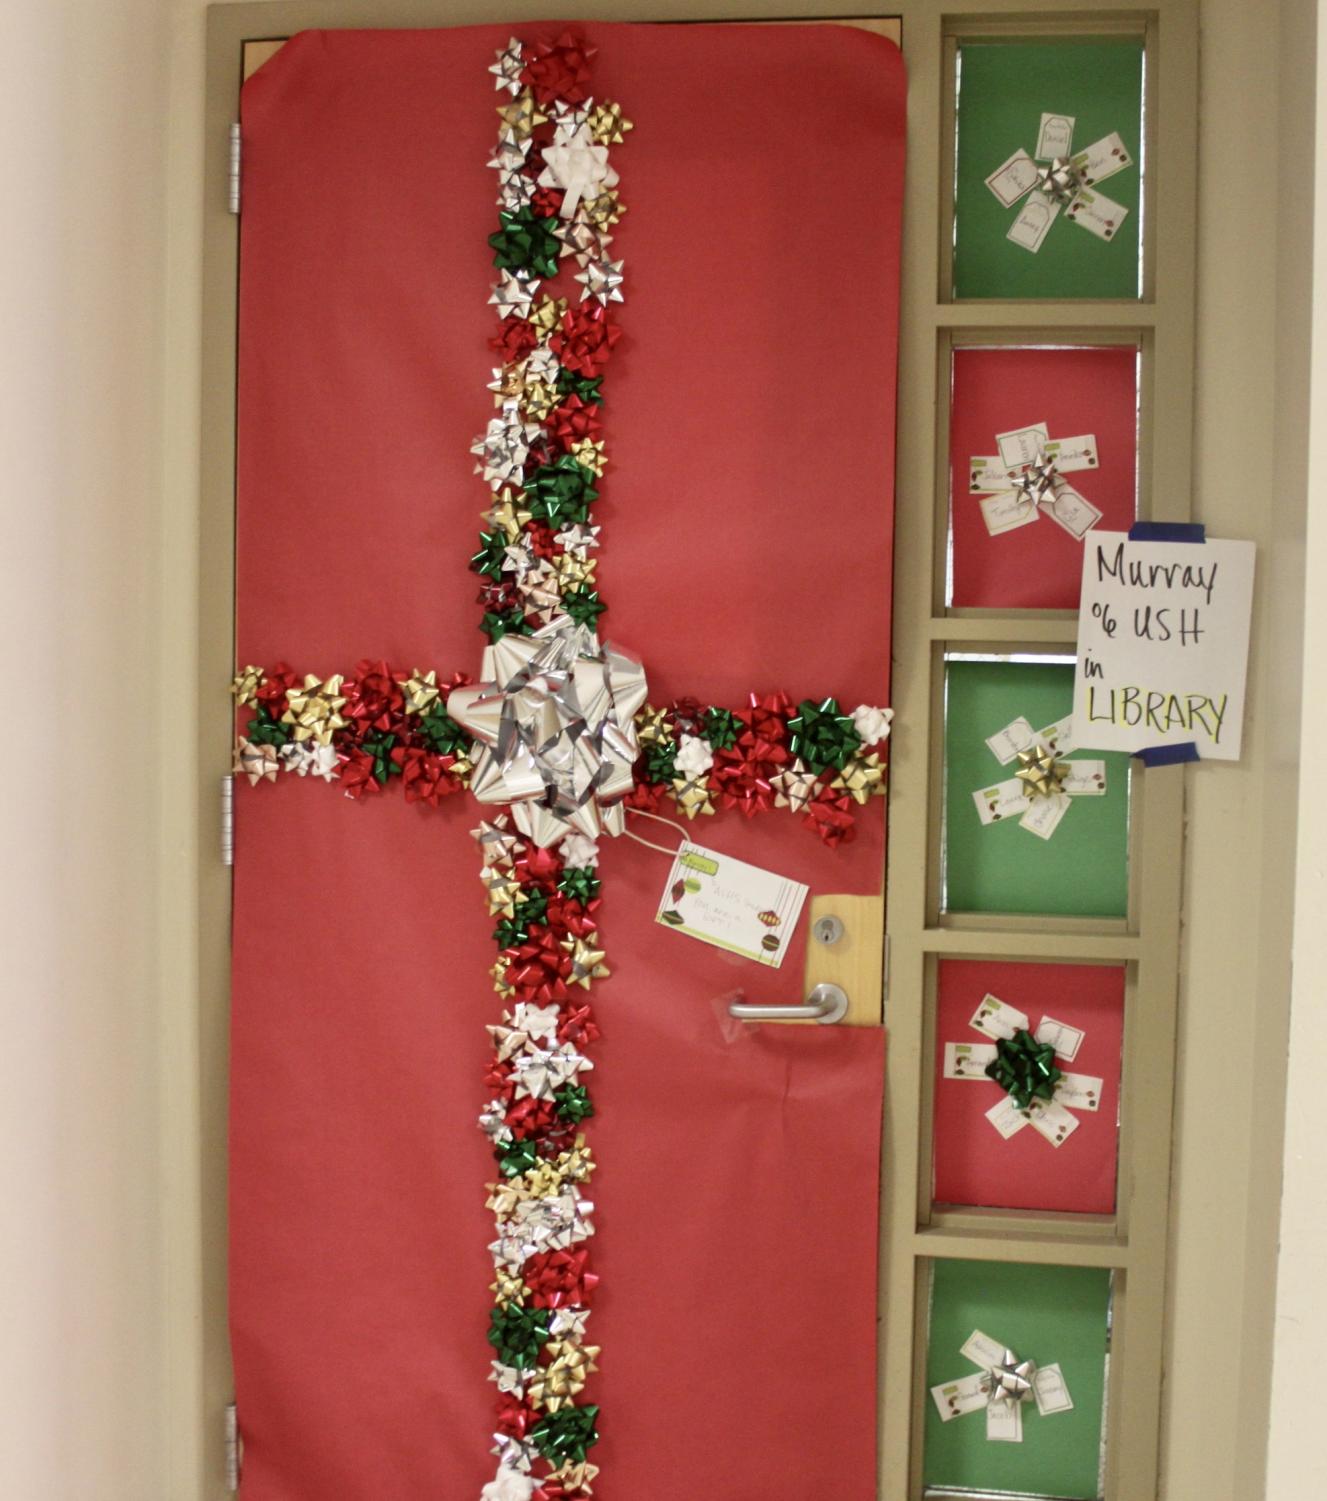 Amador+classrooms+show+holiday+spirit+through+their+door+decorations